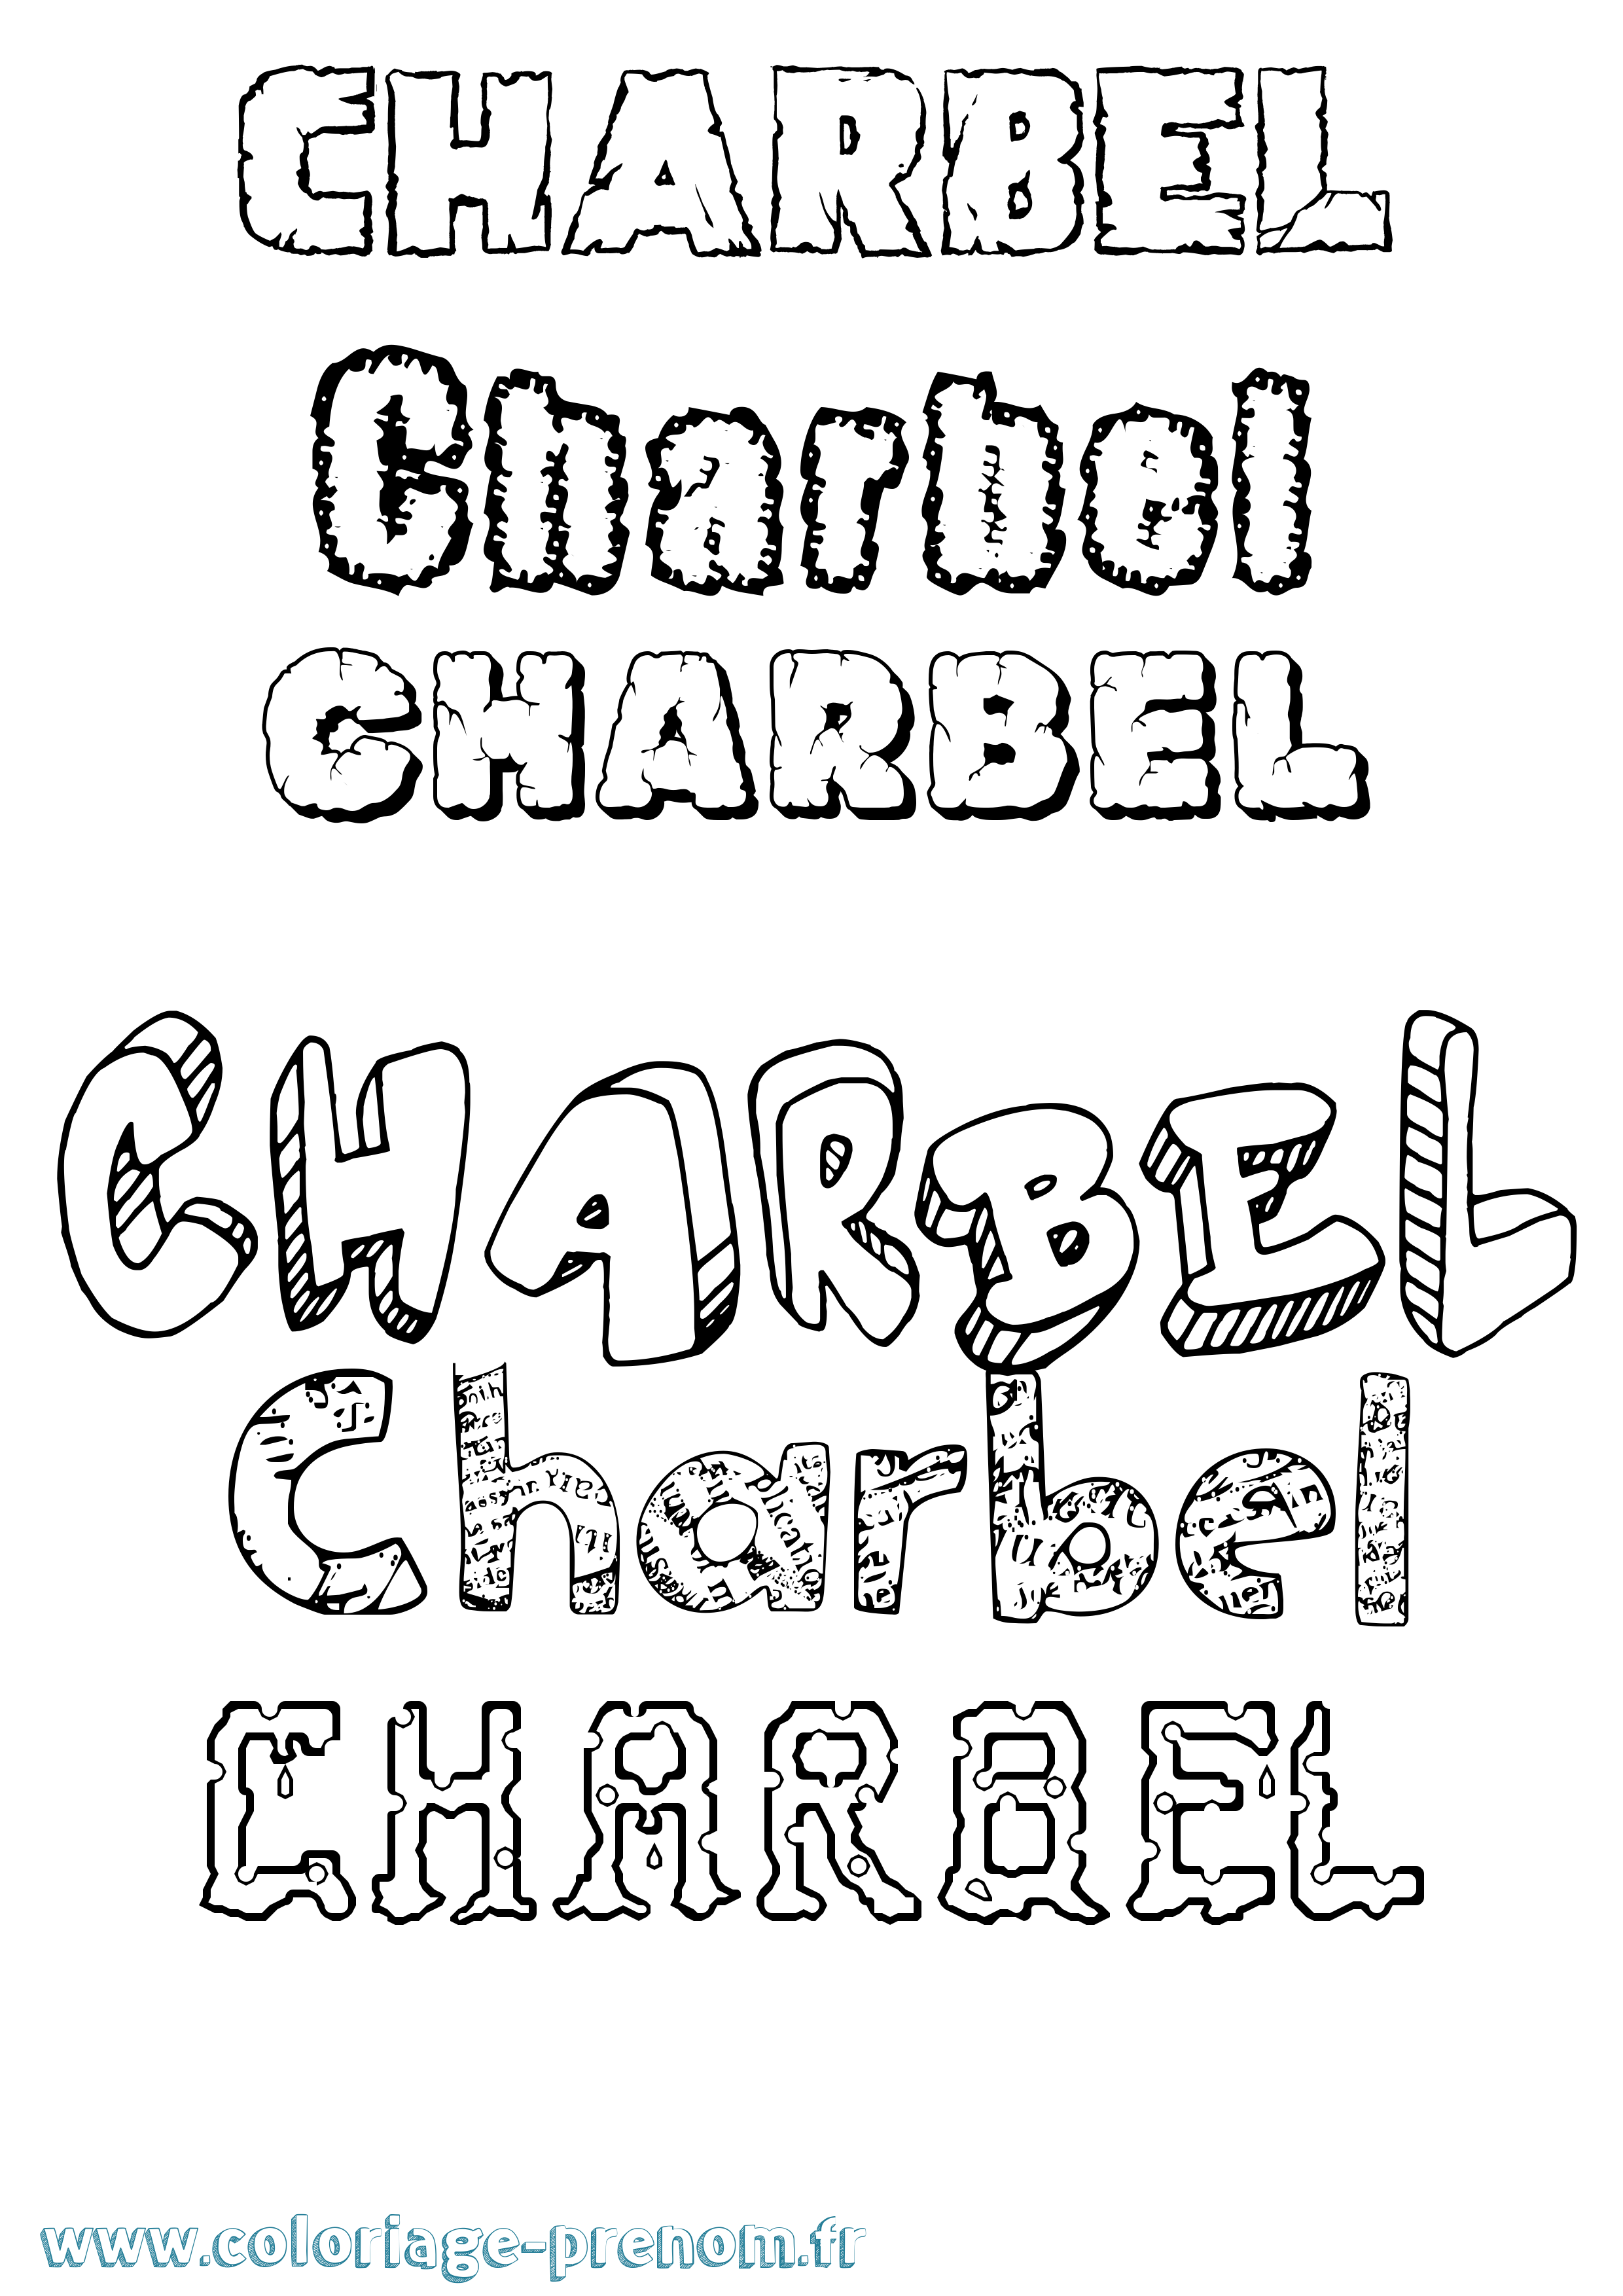 Coloriage prénom Charbel Destructuré